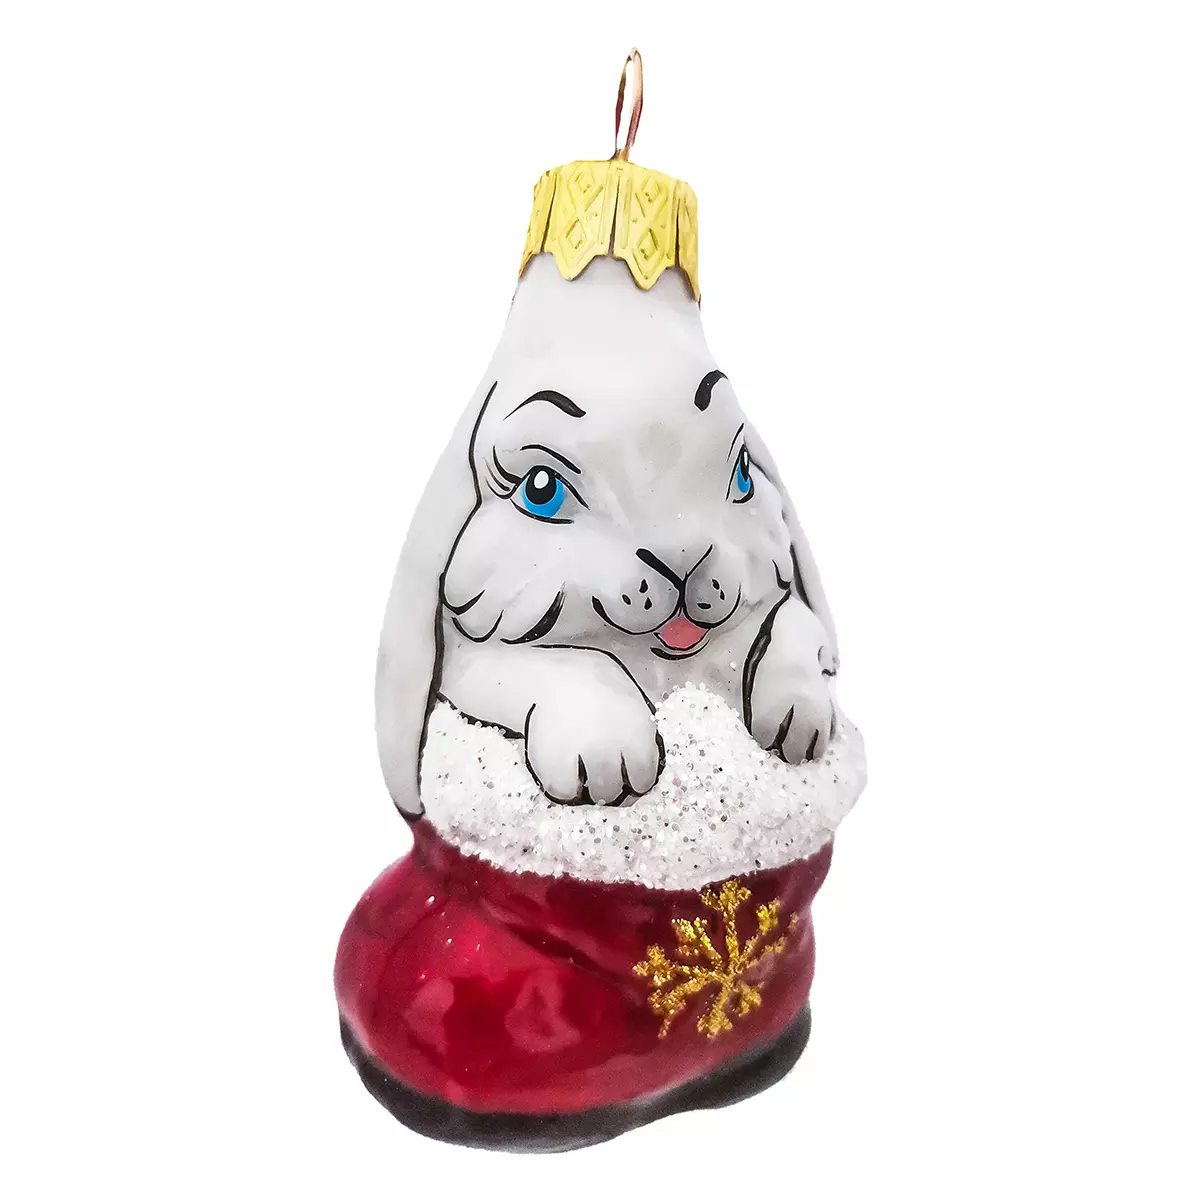 Елочное украшение Кролик в сапоге, в подарочной упаковке, h-8 см стекло ФУ-367